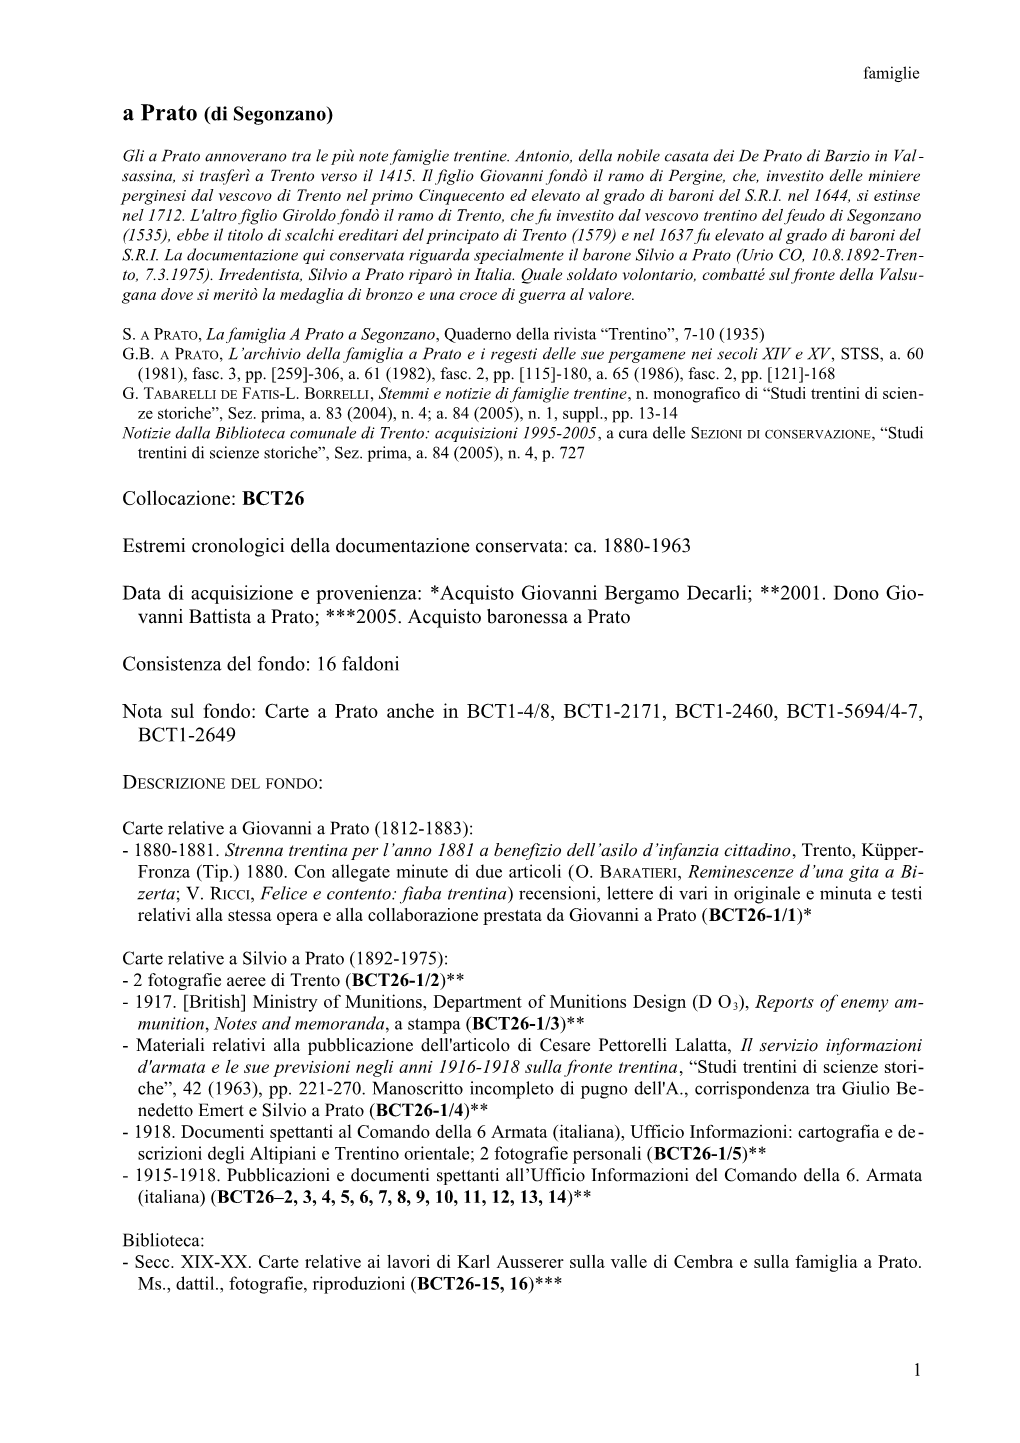 A Prato (Di Segonzano) Collocazione: BCT26 Estremi Cronologici Della Documentazione Conservata: Ca. 1880-1963 Data Di Acquisizio